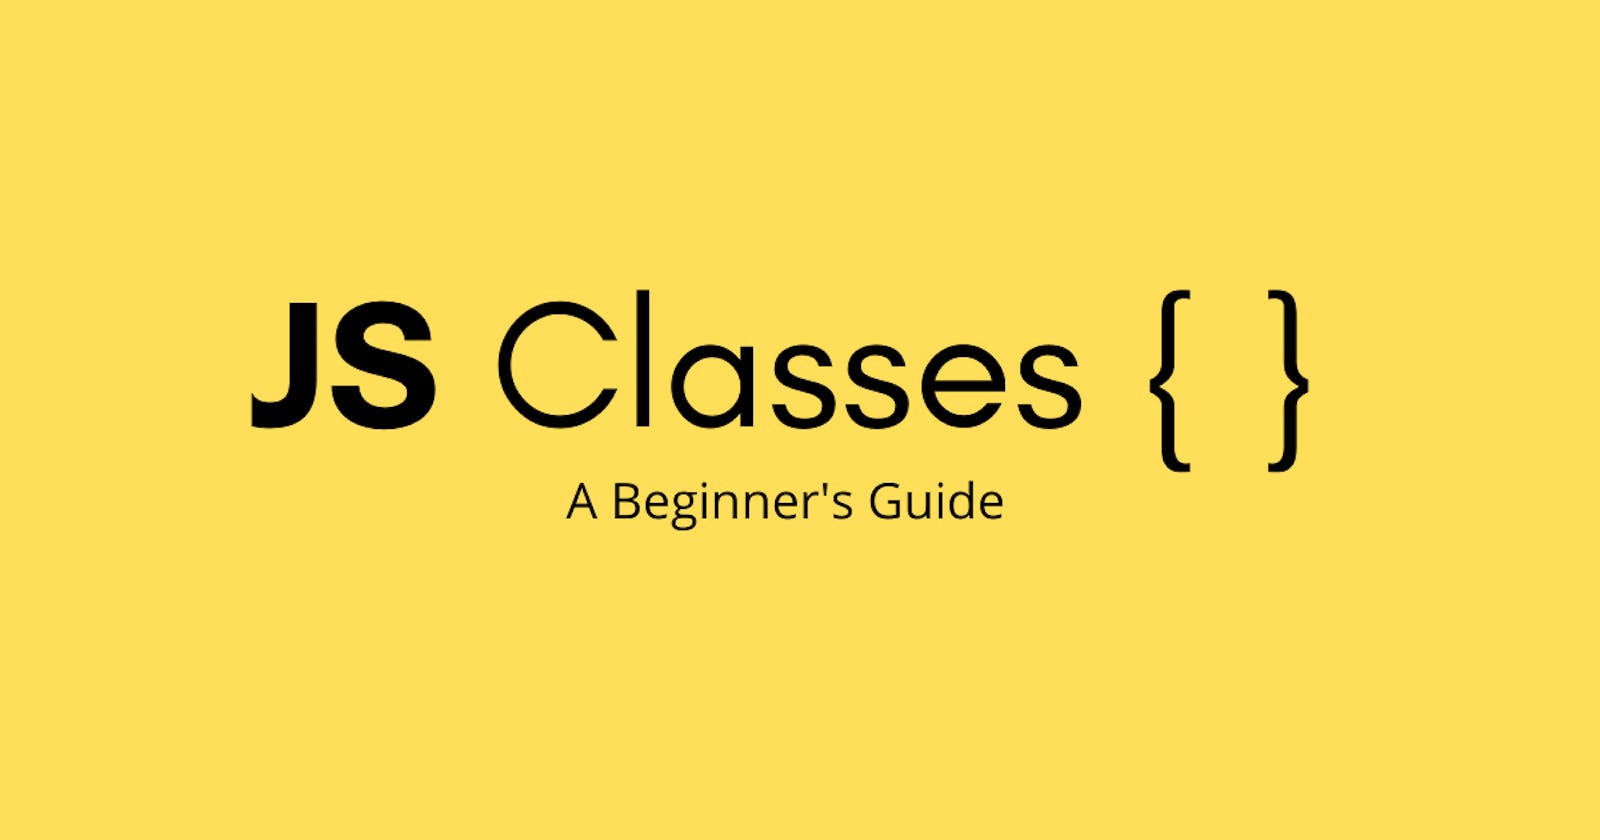 Classes In Javascript